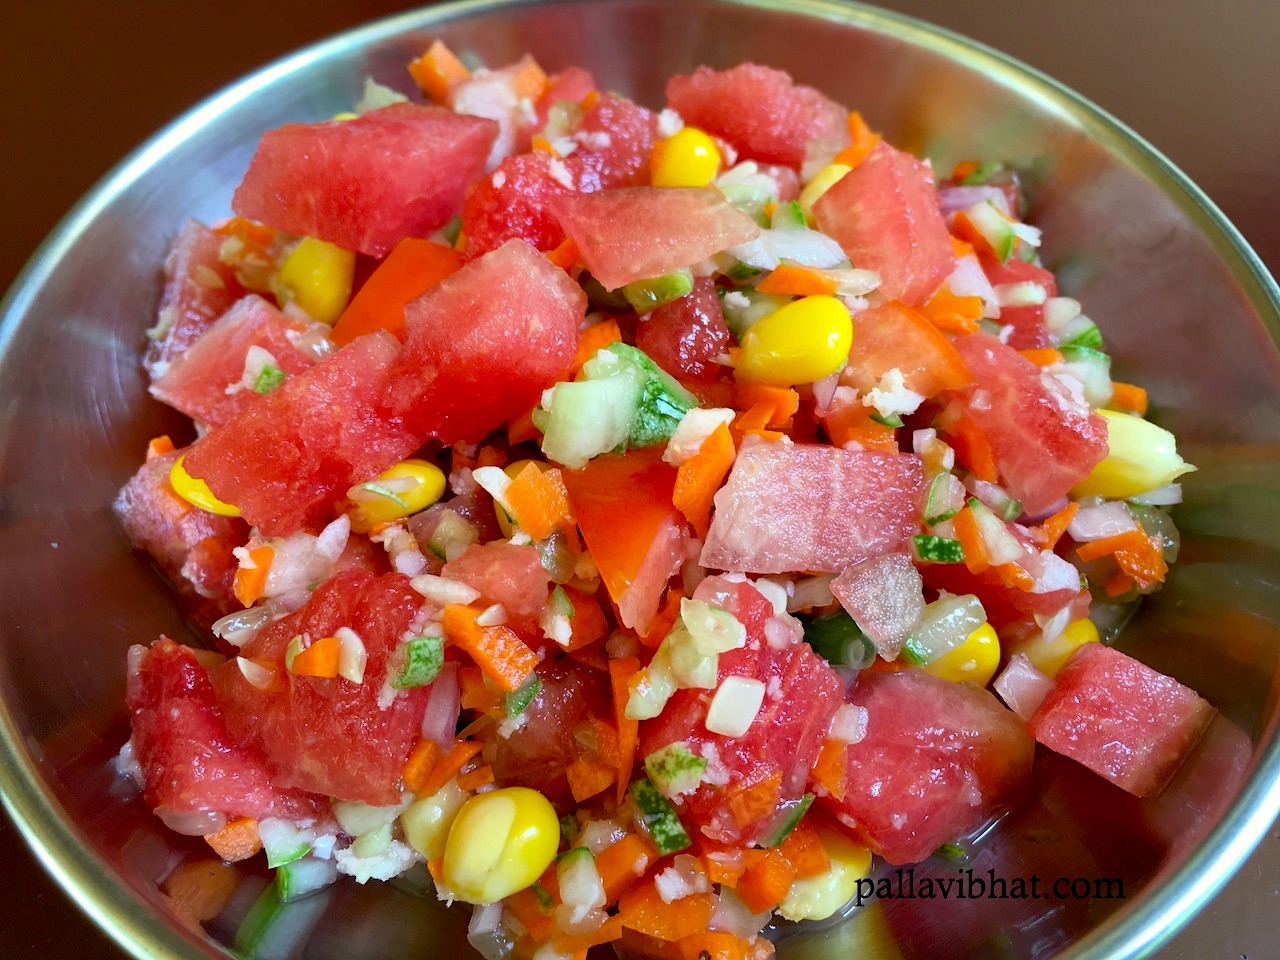 Watermelon-Cucucmber Salad